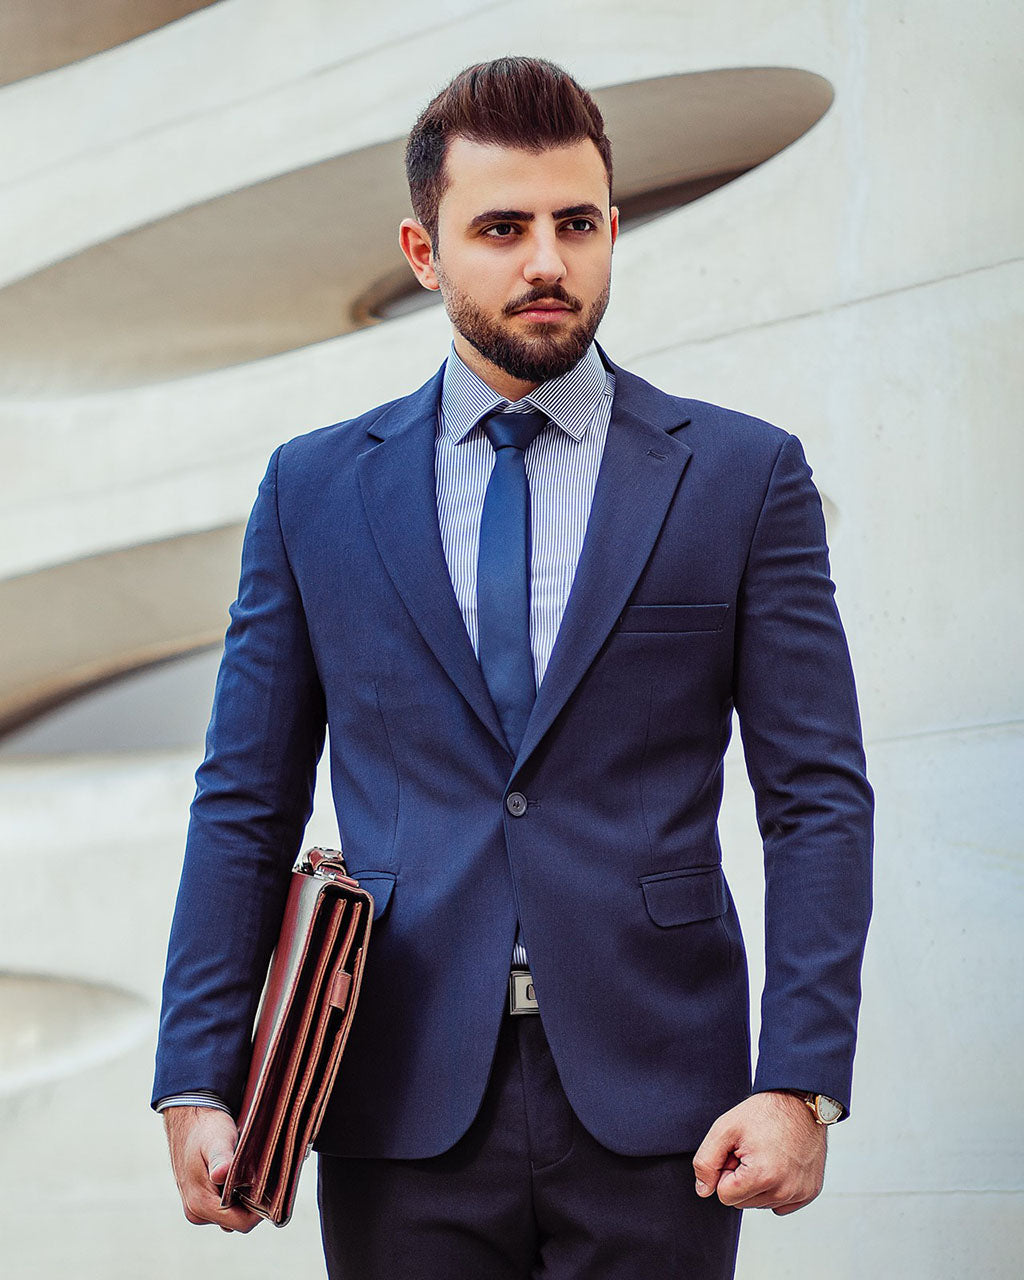 男生常常需要穿著西裝出席商務場合。